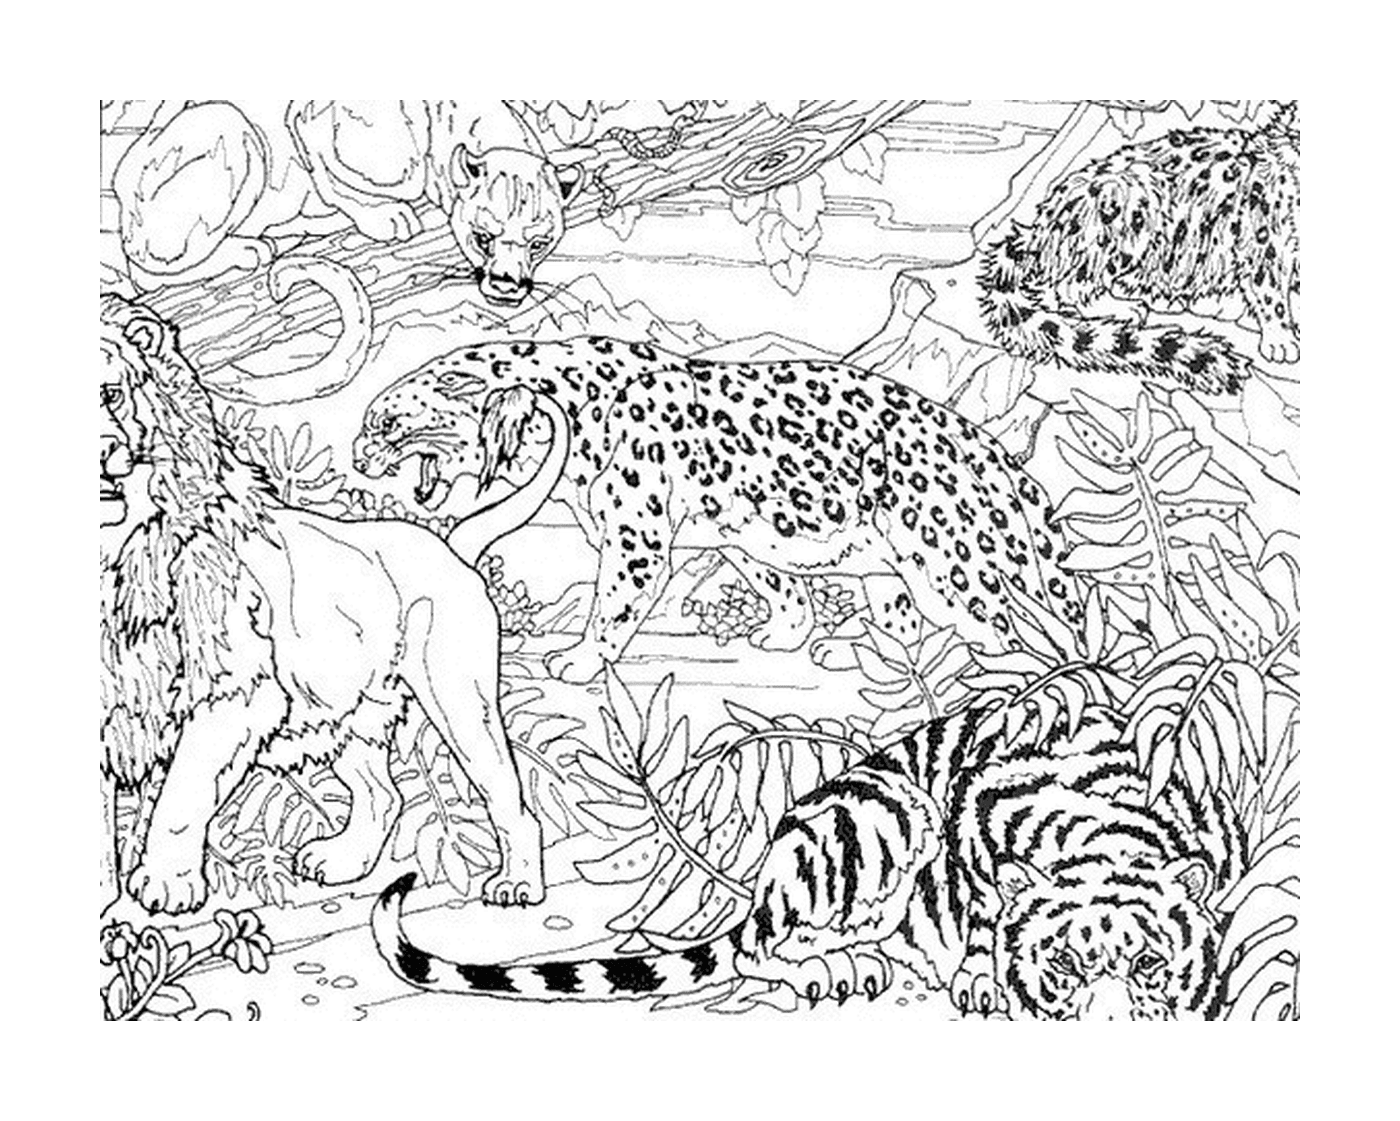   Un léopard et deux tigres dans la jungle 